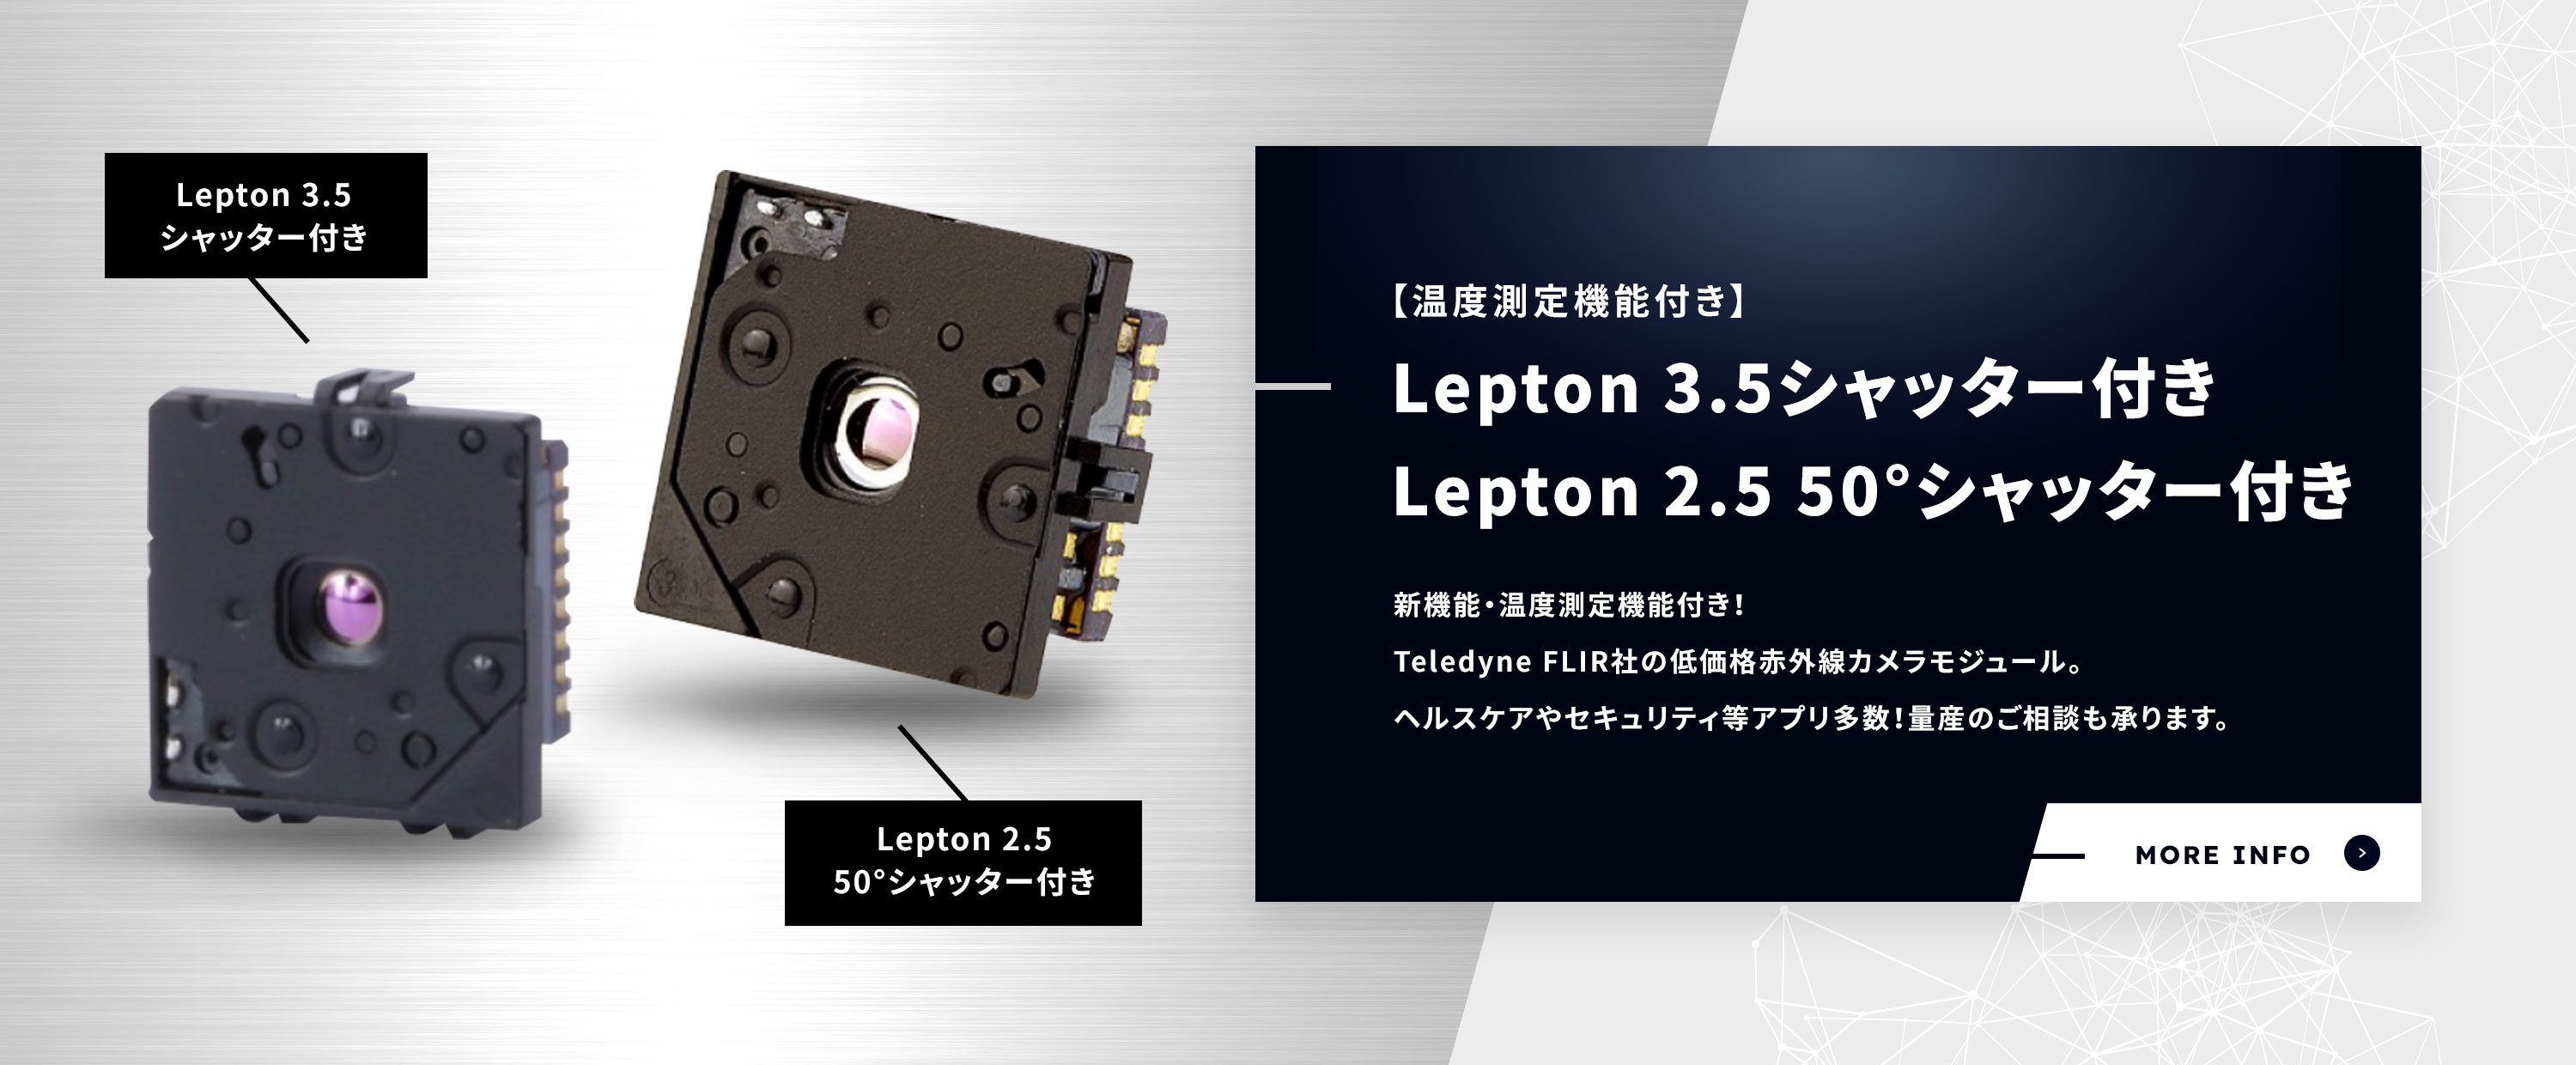 【温度測定機能付き】Lepton 3.5 / 2.5 50